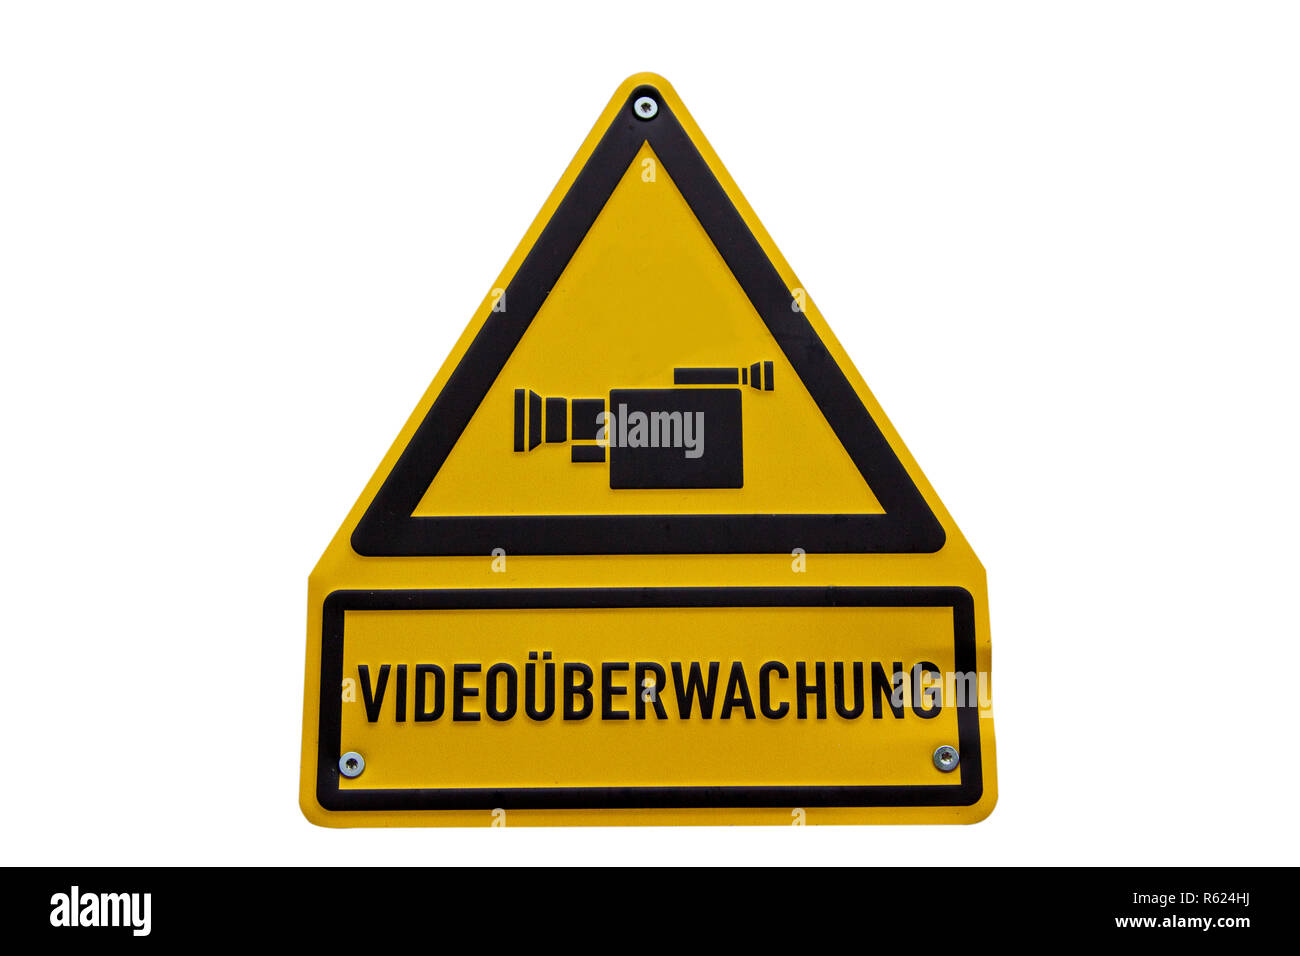 5X24H CCTV Videokamera System Sicherheit Warnzeichen Aufkleber Hohe Qualität AB 